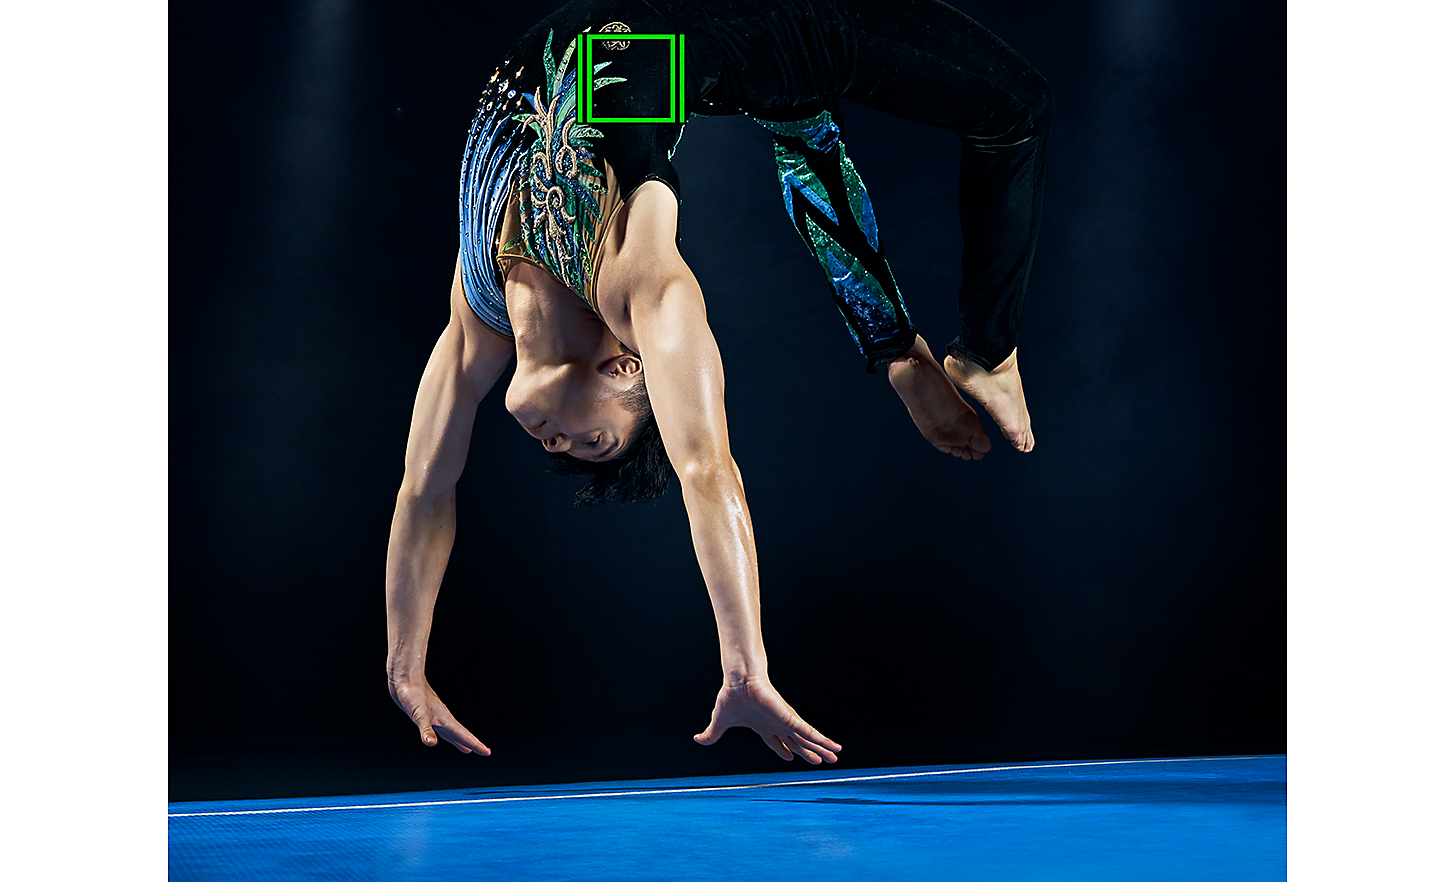 Image dynamique montrant une personne en pleine figure acrobatique, le suivi en temps réel représenté par un carré vert